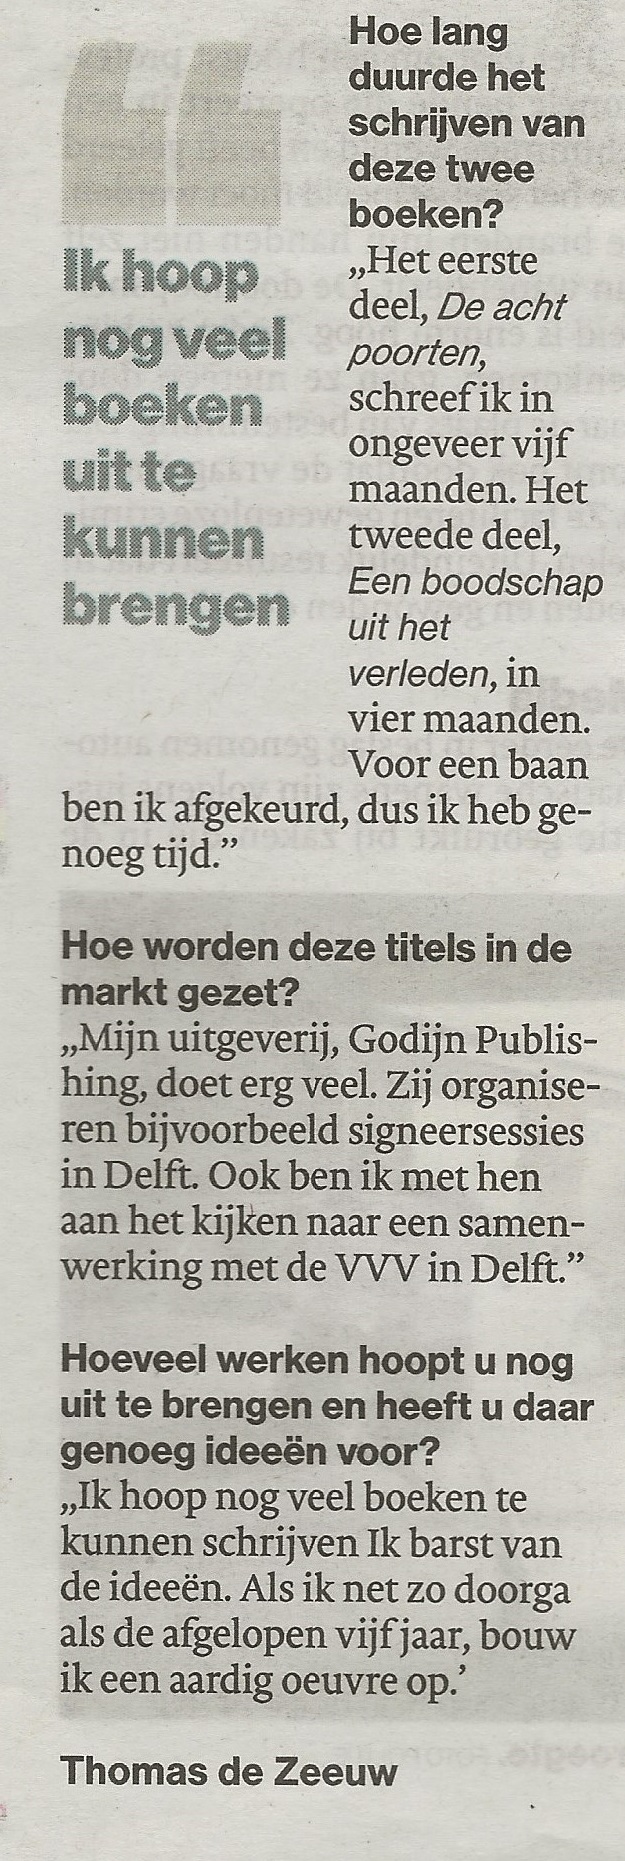 Algemeen Dagblad Delft 06-12-2019 deel2